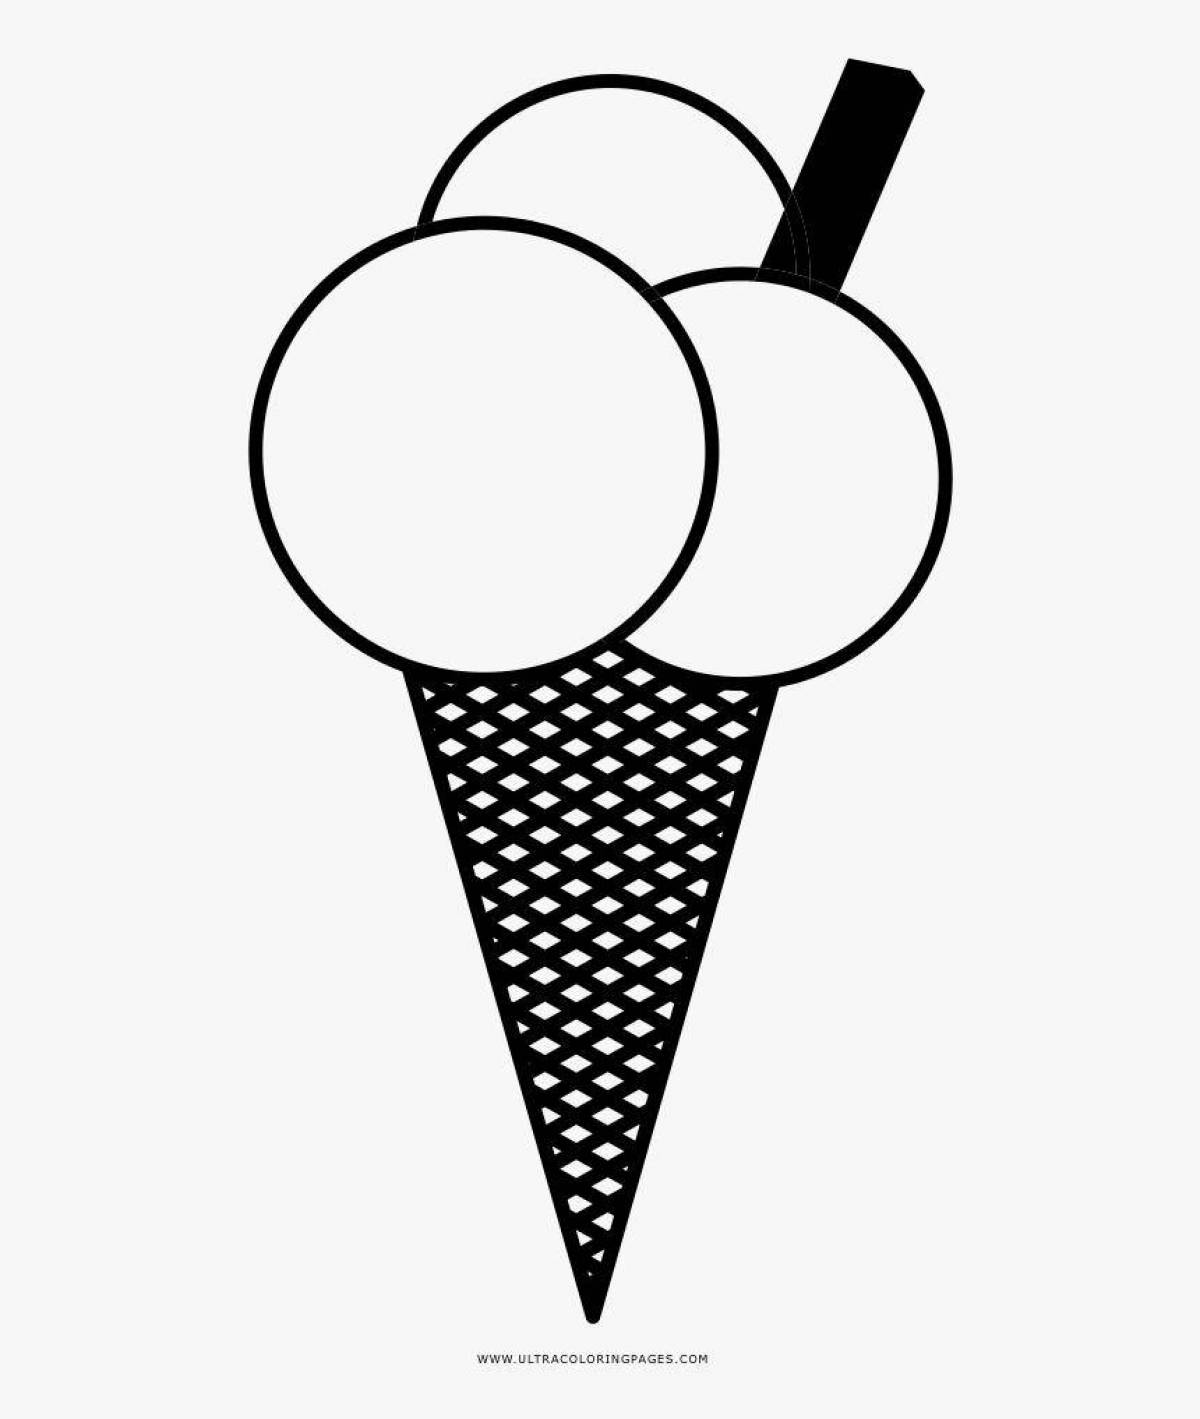 A fun ice cream cone coloring page